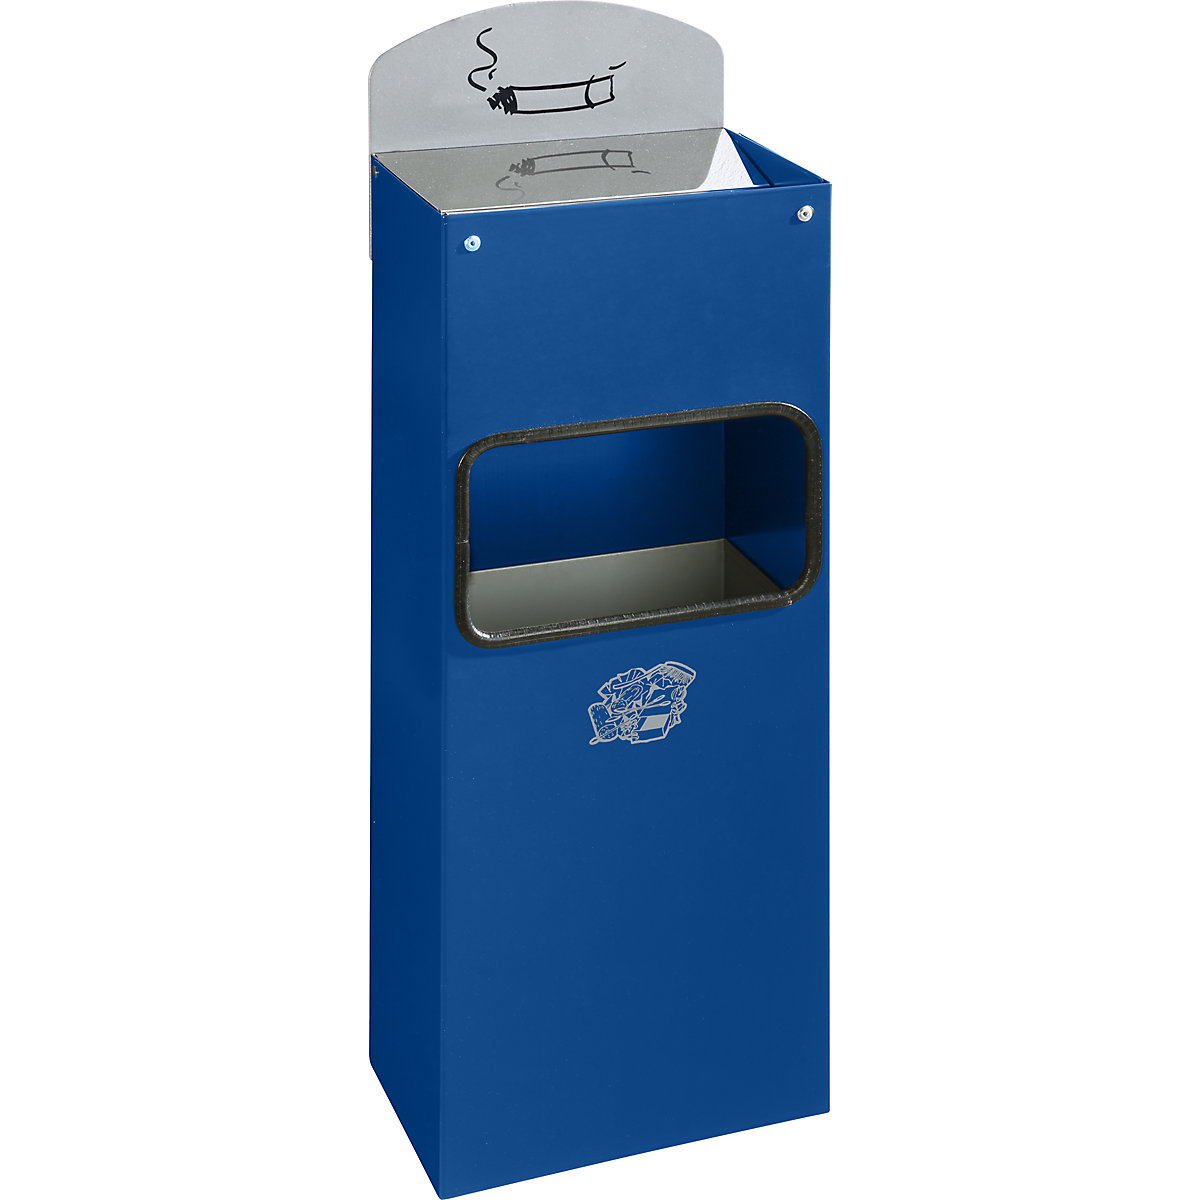 VAR – Kombinovaný nástěnný popelník s vhazovacím otvorem pro odpadky, v x š x h 505 x 200 x 125 mm, ocelový plech, enciánová modrá